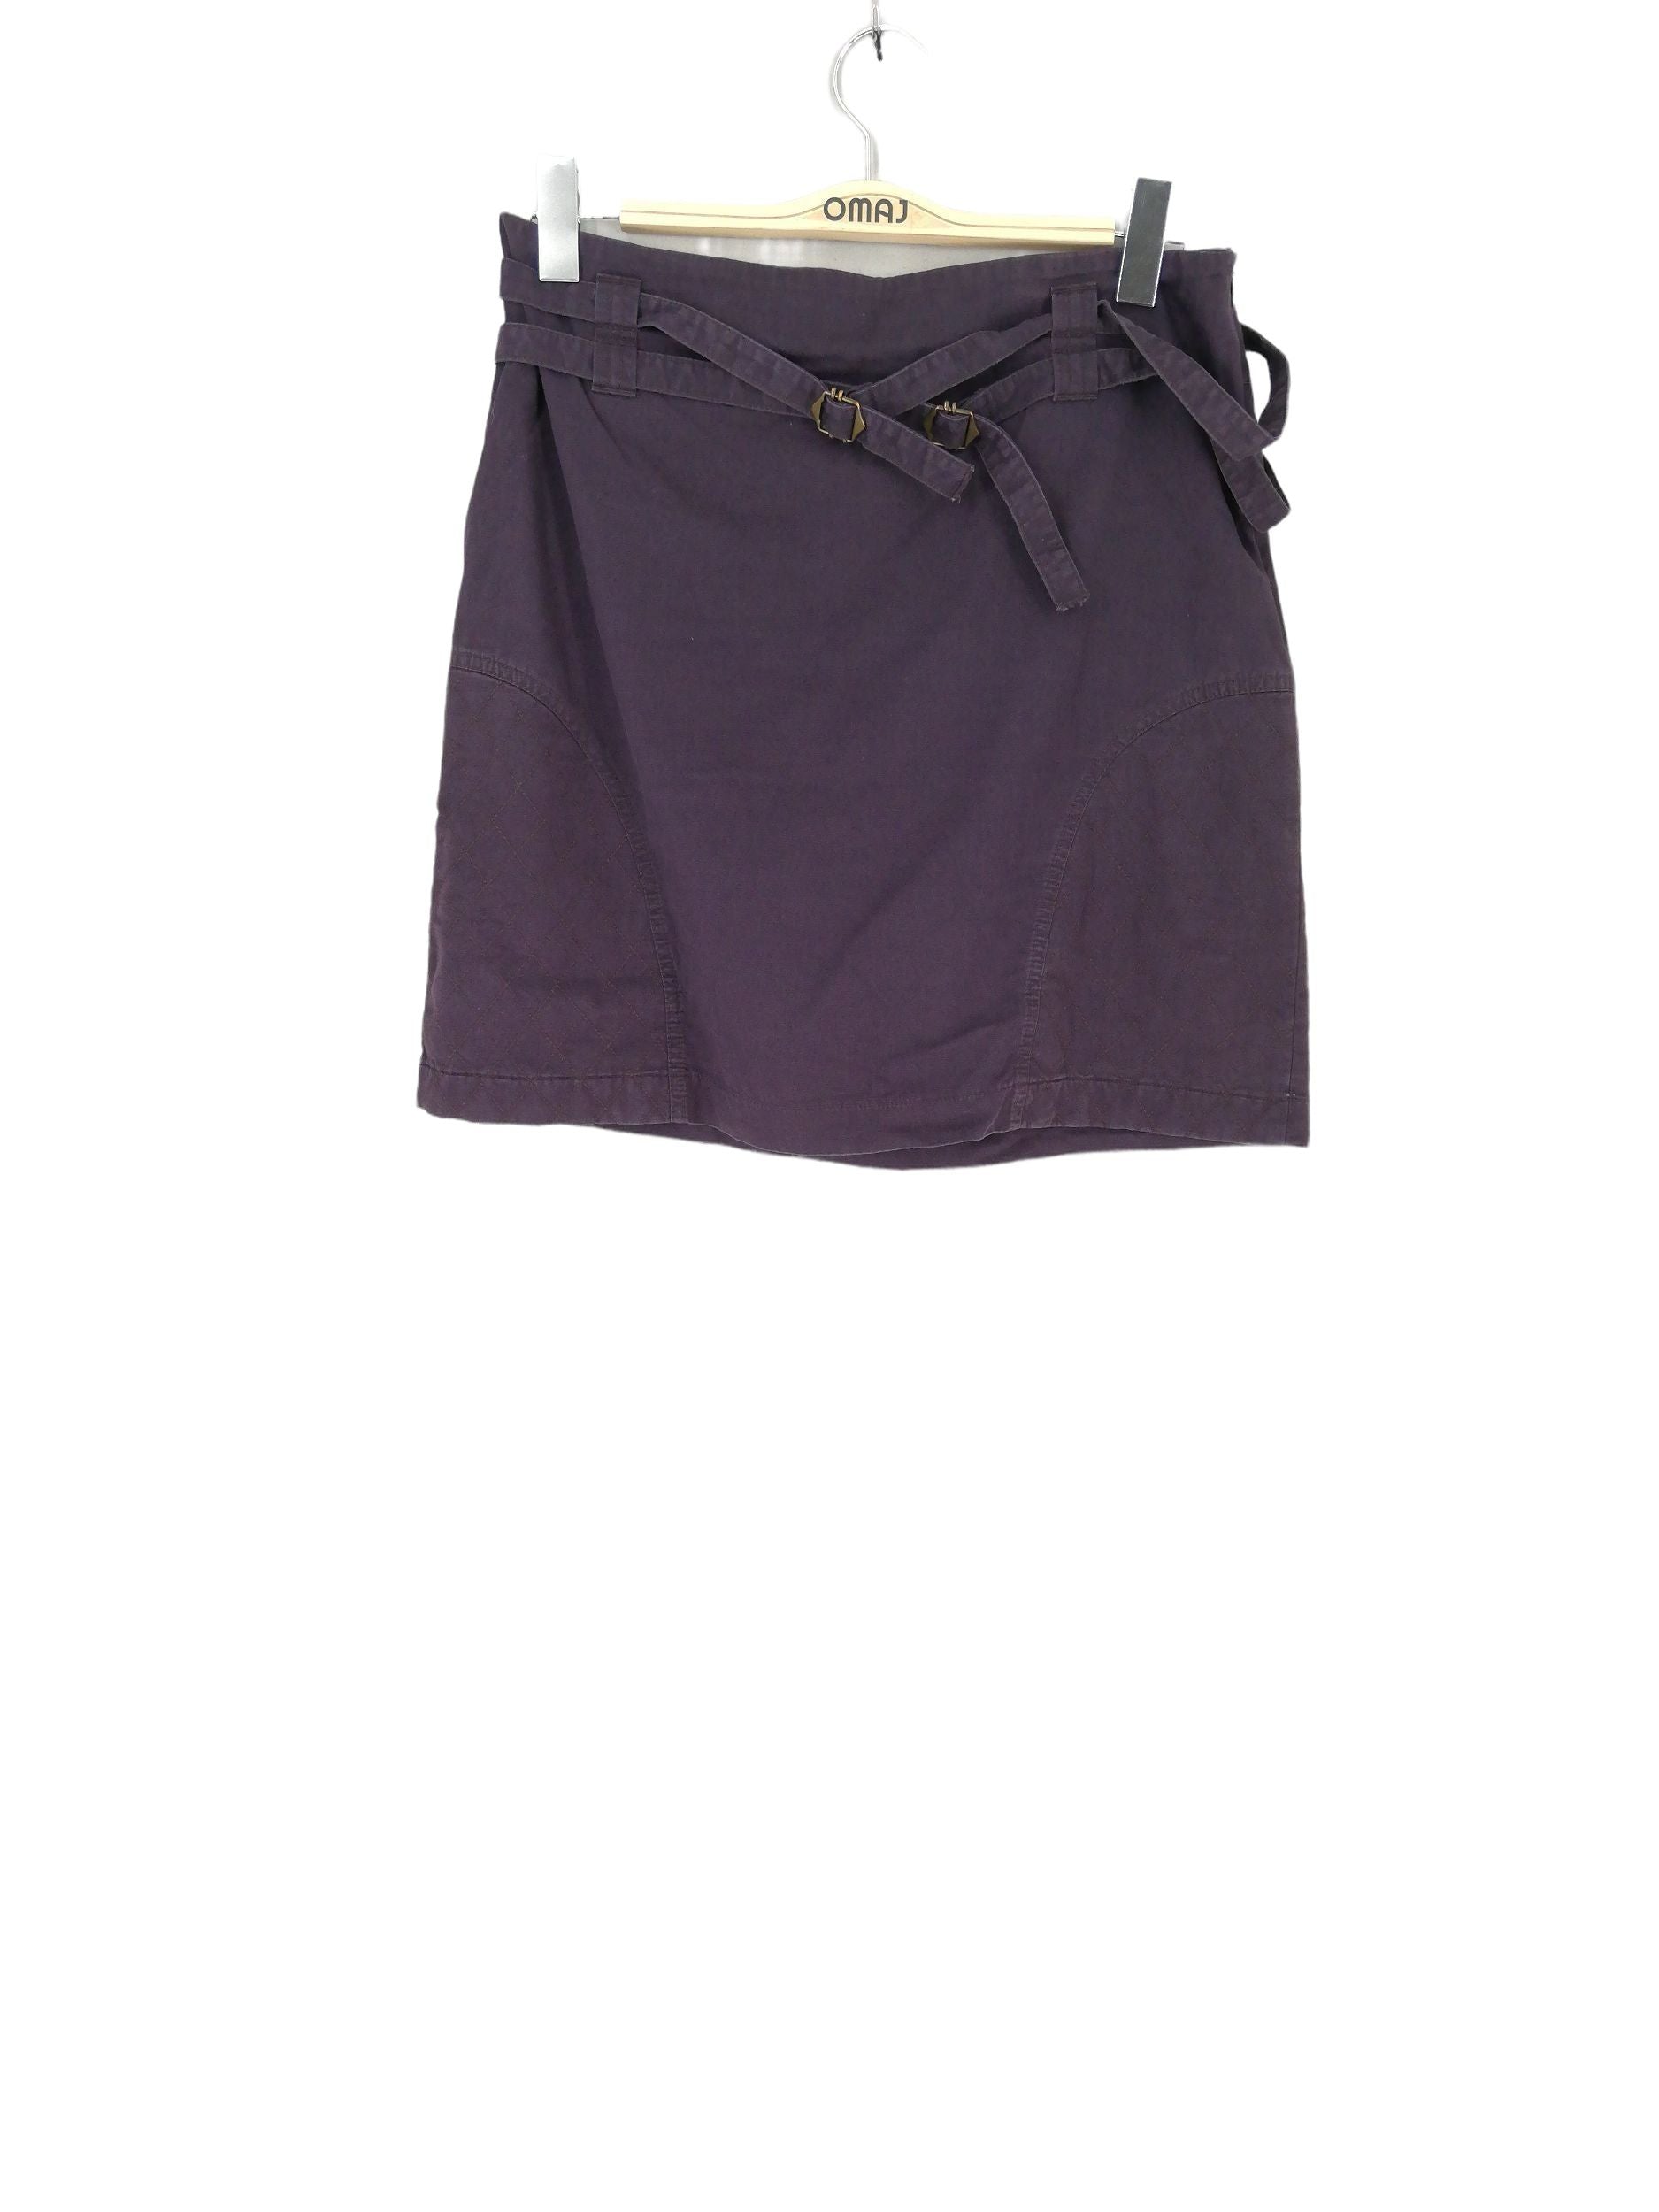 Jupe femme fashion VANESSA couleur violet ceinture noire